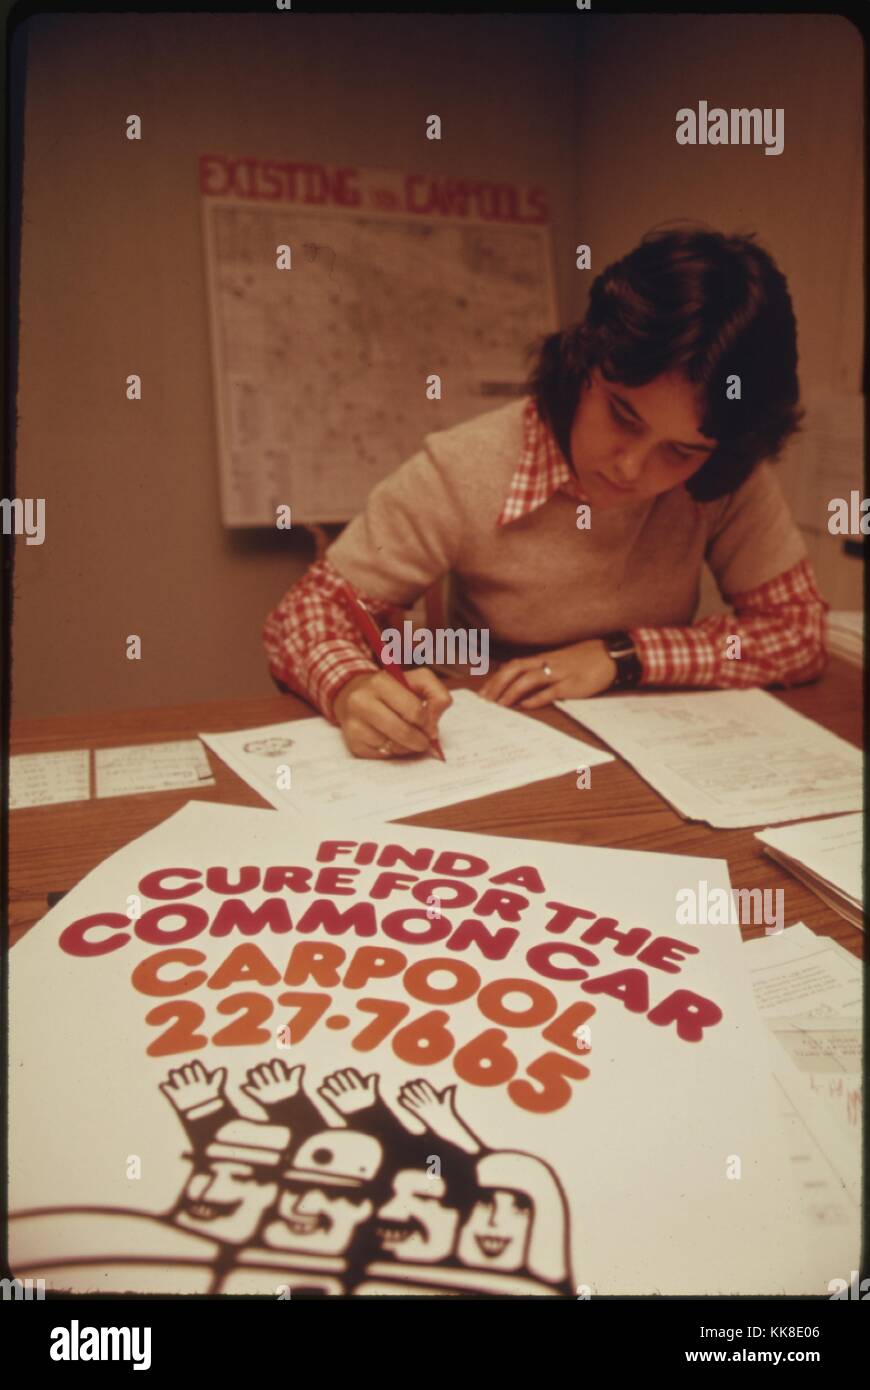 Fotografia a colori di una donna la compilazione di documenti a una scrivania, con un cartello che recita "a trovare una cura per l'auto comune, Carpool', 1974. Immagine cortesia archivi nazionali. Foto Stock